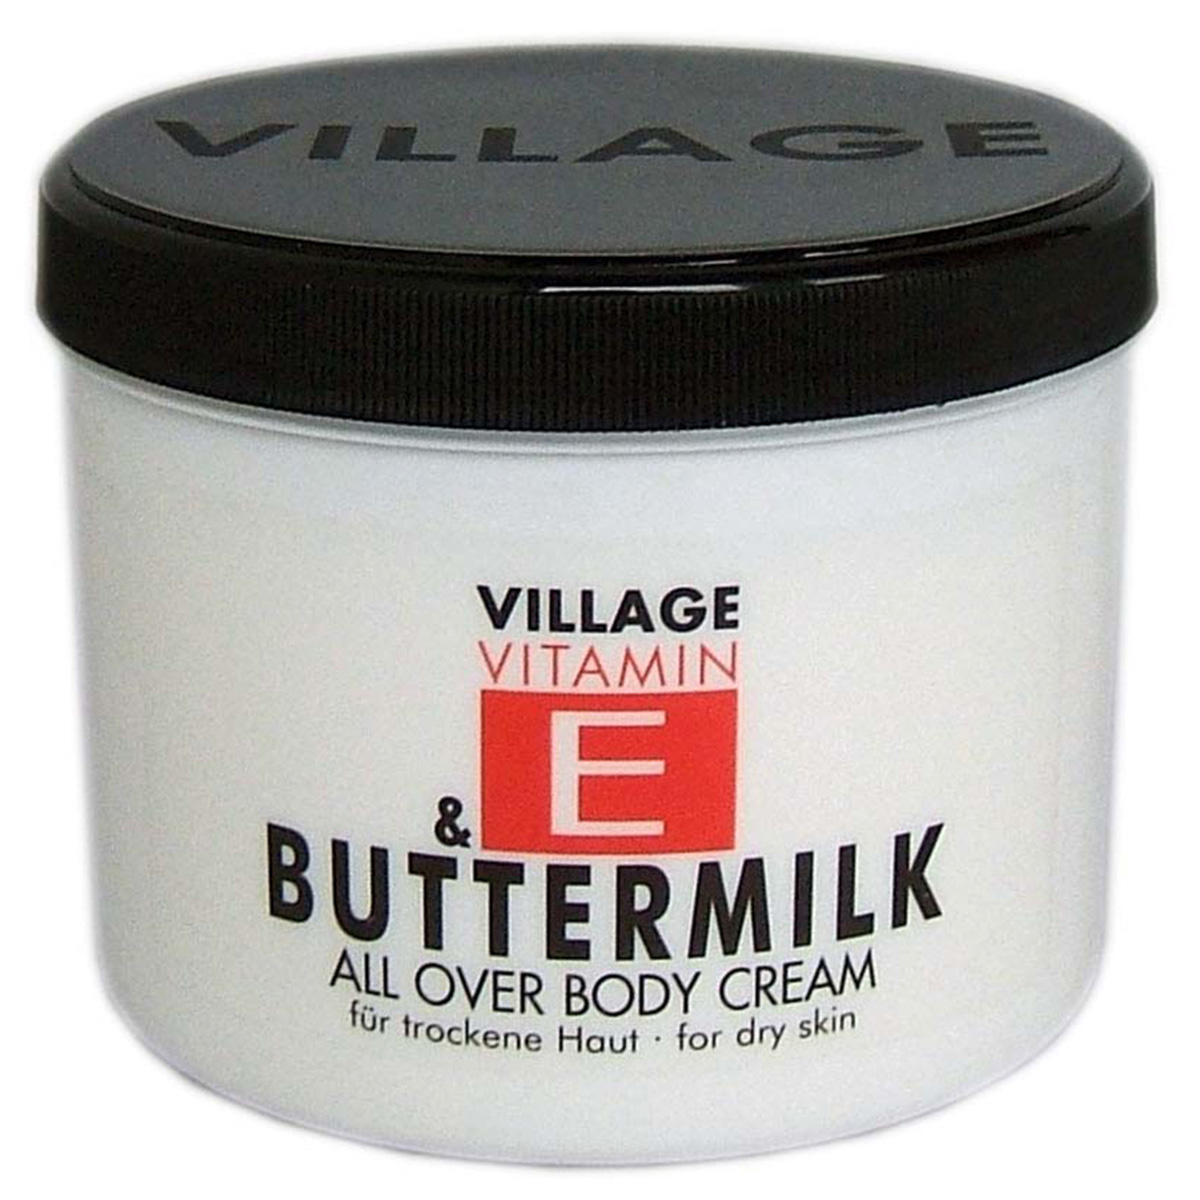 Village Vitamin E Buttermilk All Over Body Cream 500 ml - 1